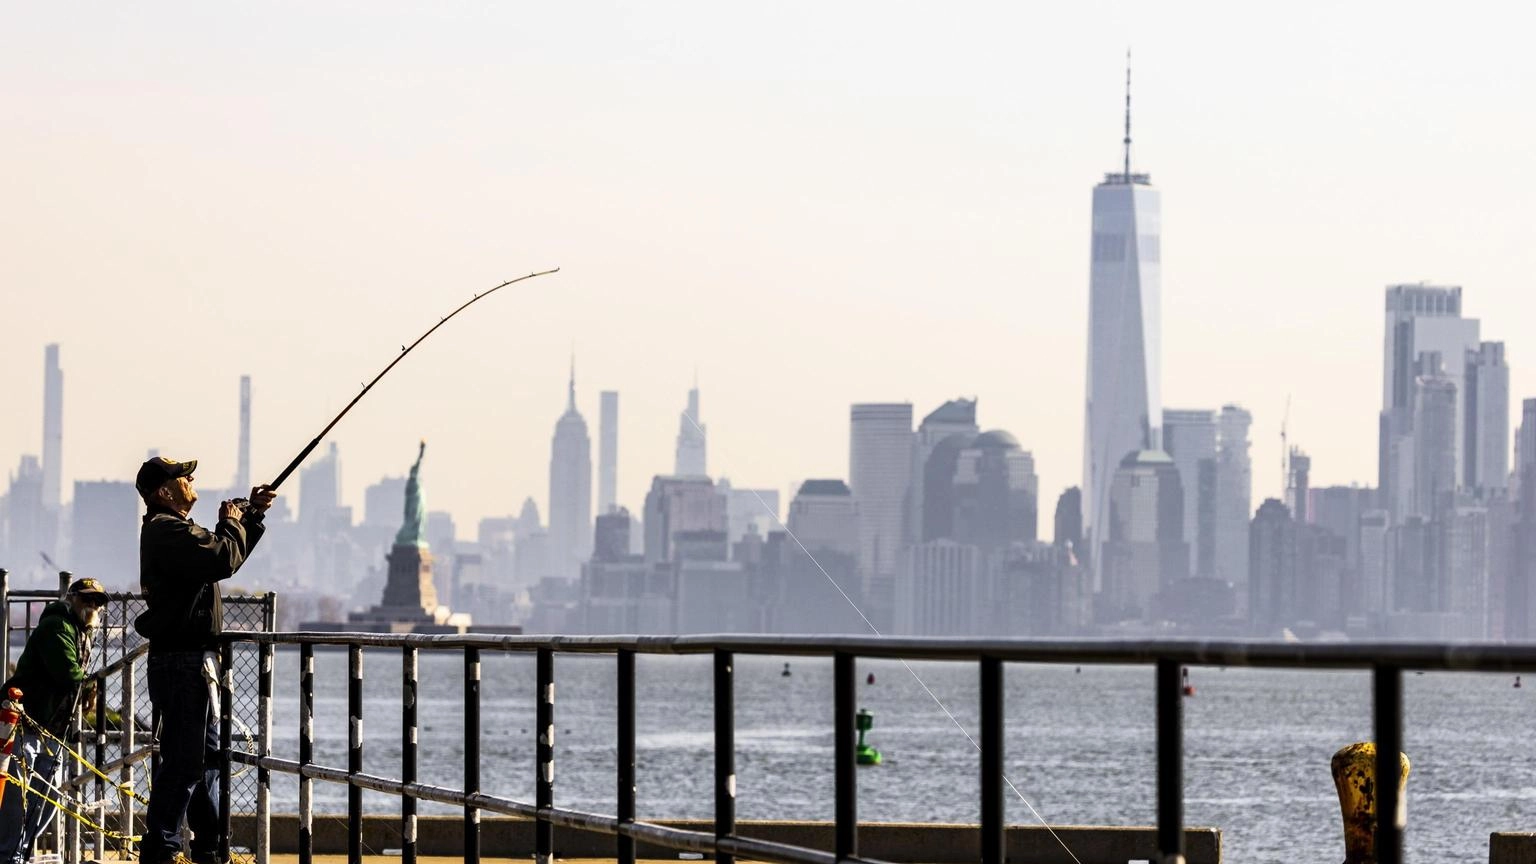 Prezzi della case a New York salgono, boom acquisti in contanti